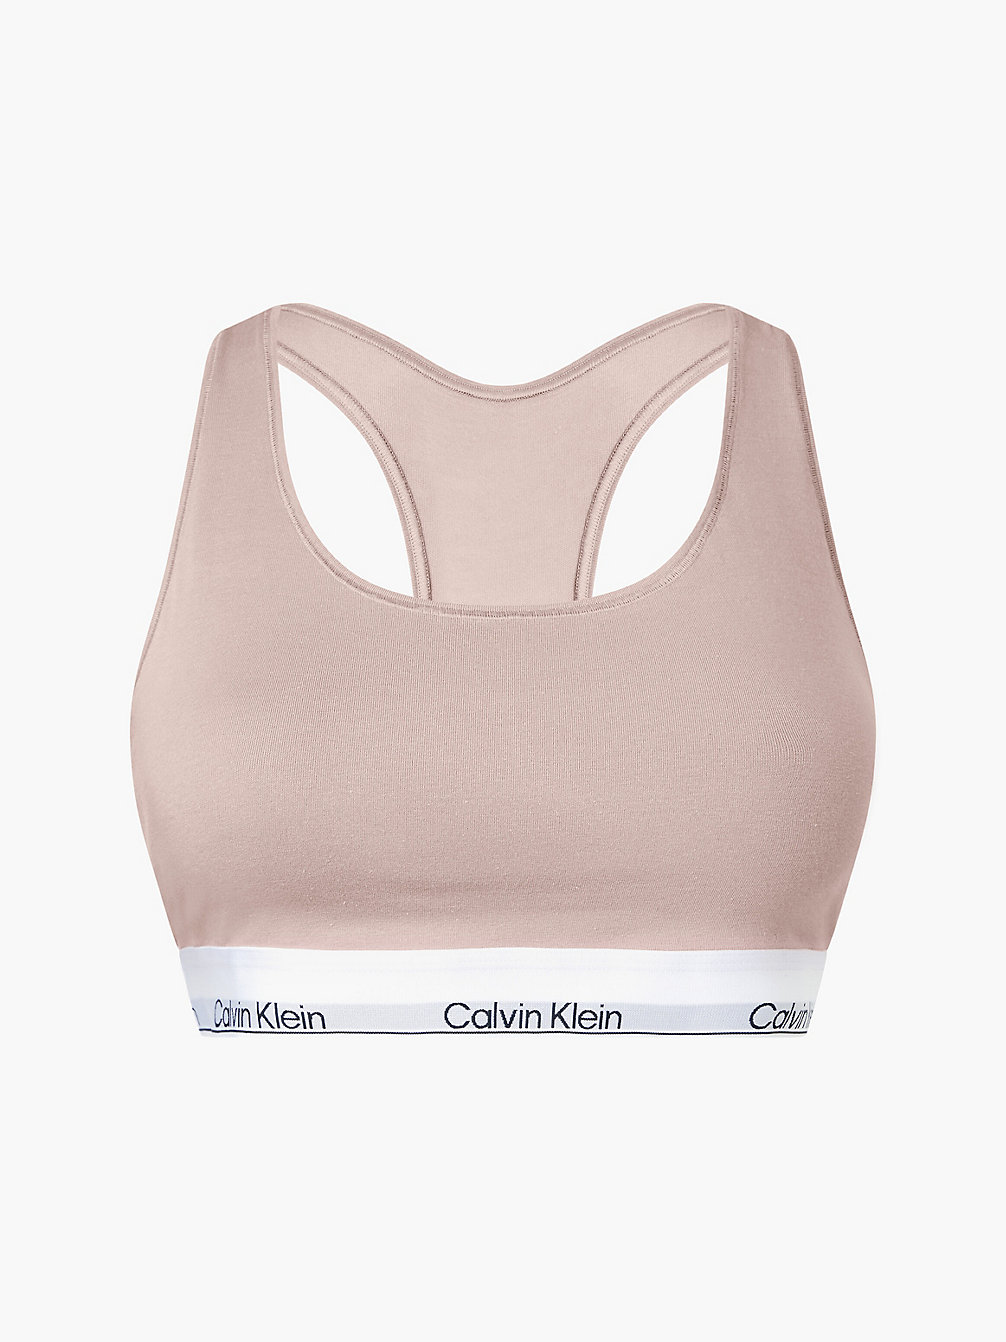 CEDAR > Bralette Großen Größen – Modern Cotton > undefined Damen - Calvin Klein